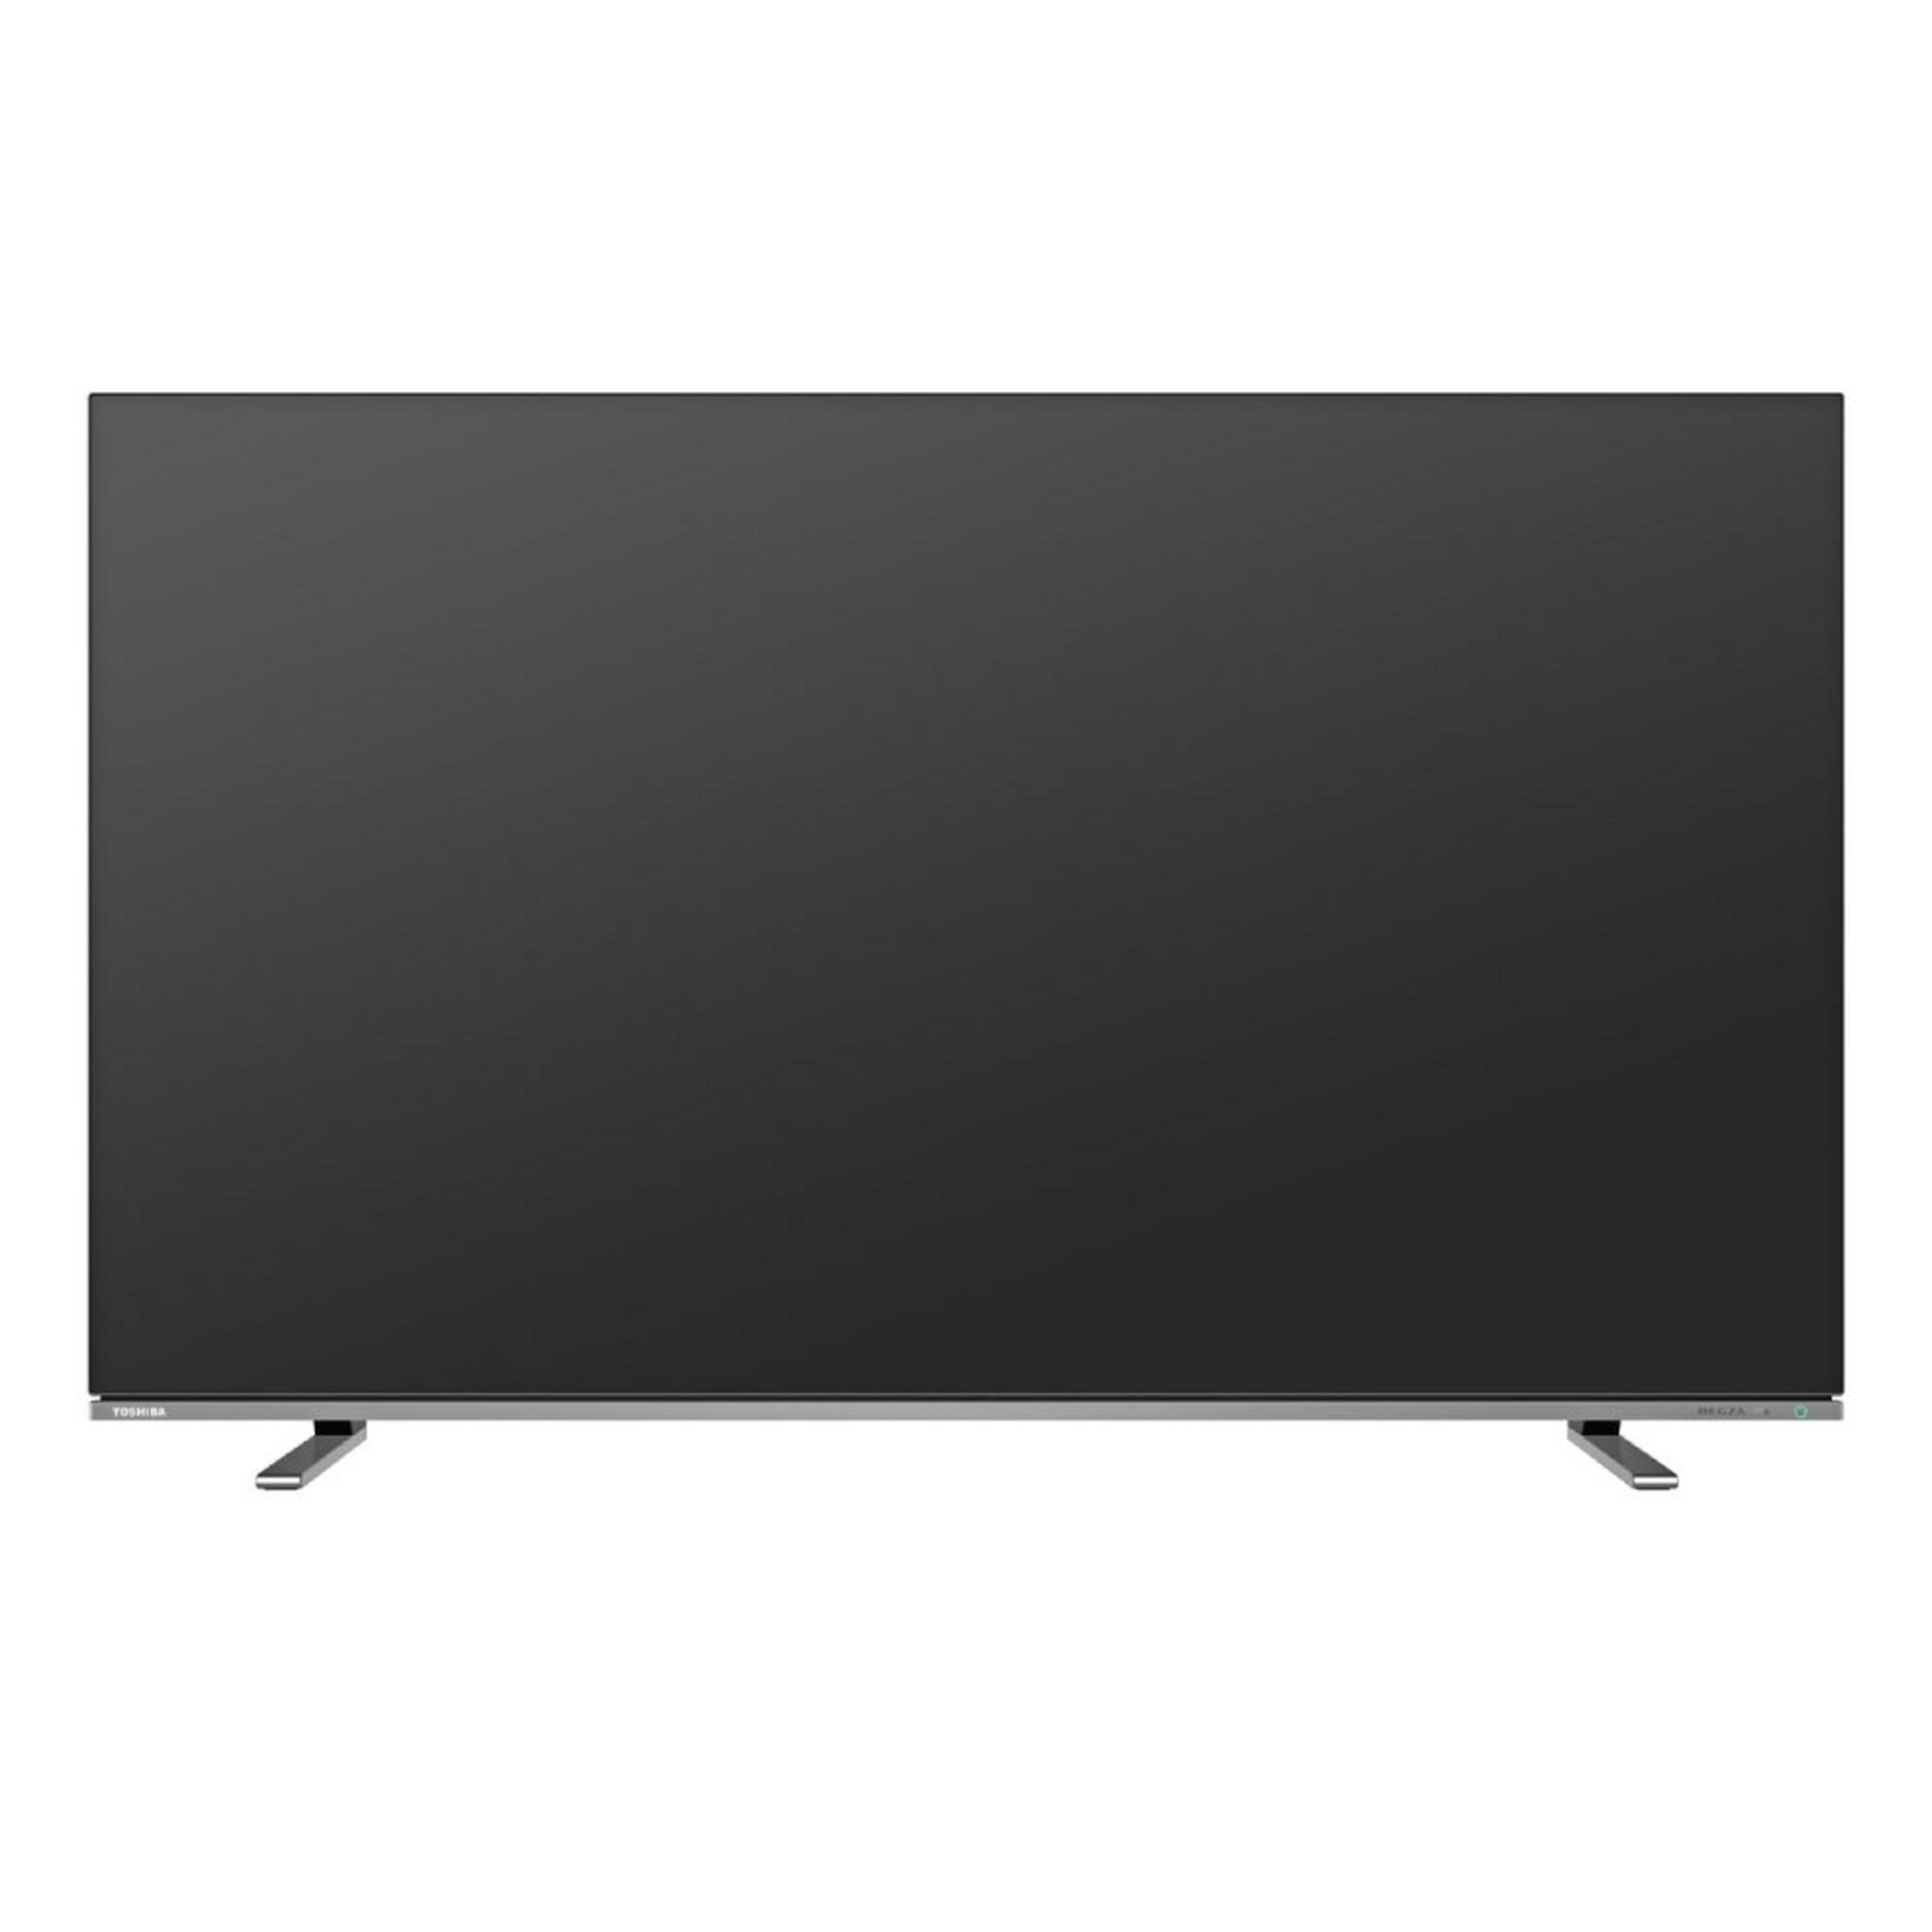 تلفزيون توشيبا الذكي ٦٥ بوصة فائق الوضوح أو إل إي دي ٦٠ هرتز (65X8900)